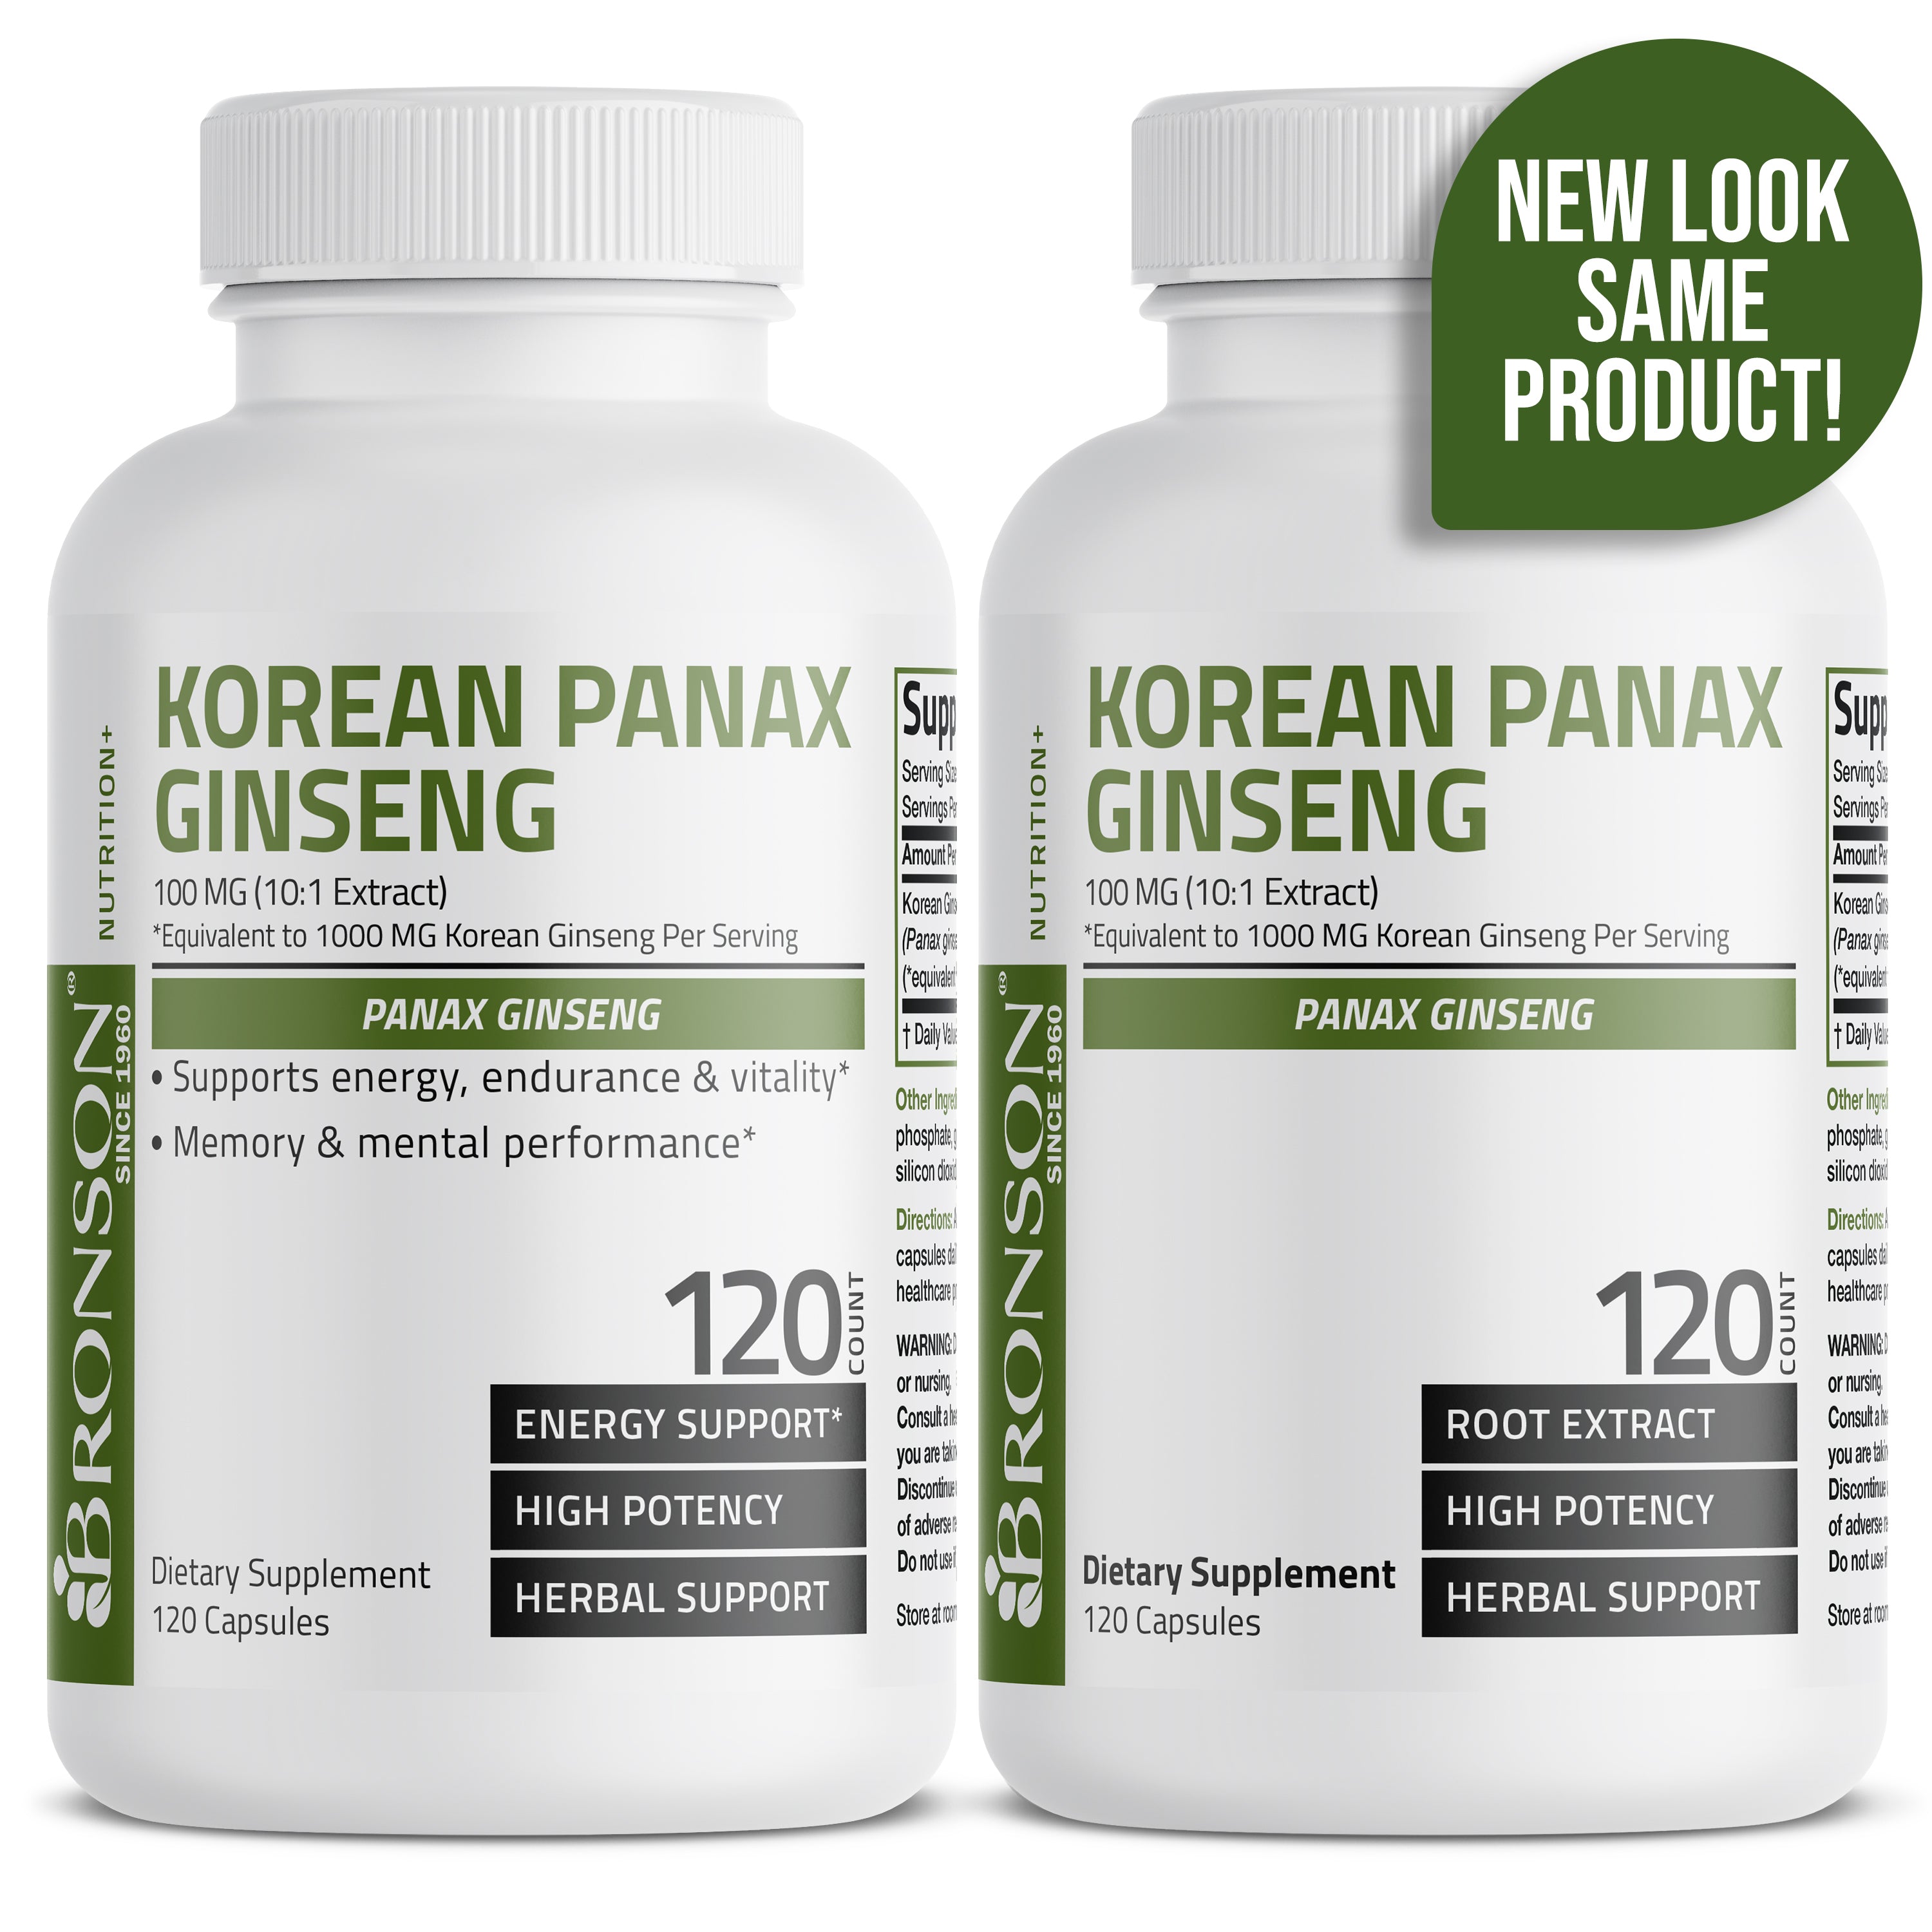 Korean Panax Ginseng - 1,000 mg view 14 of 15